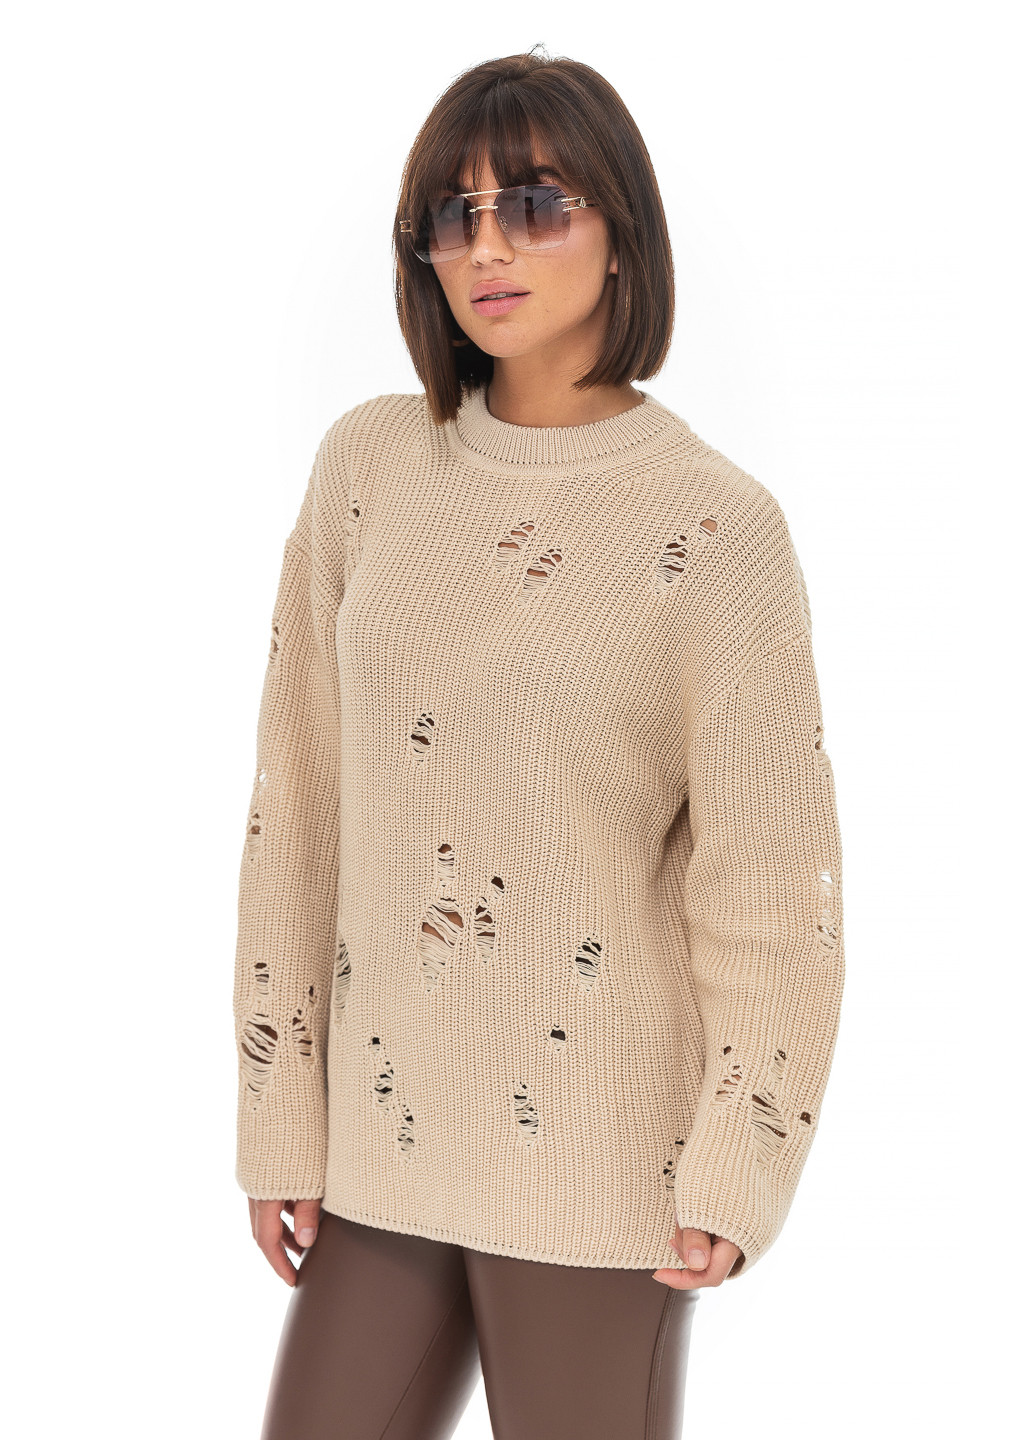 Бежевый женский свитер с дырками. SVTR